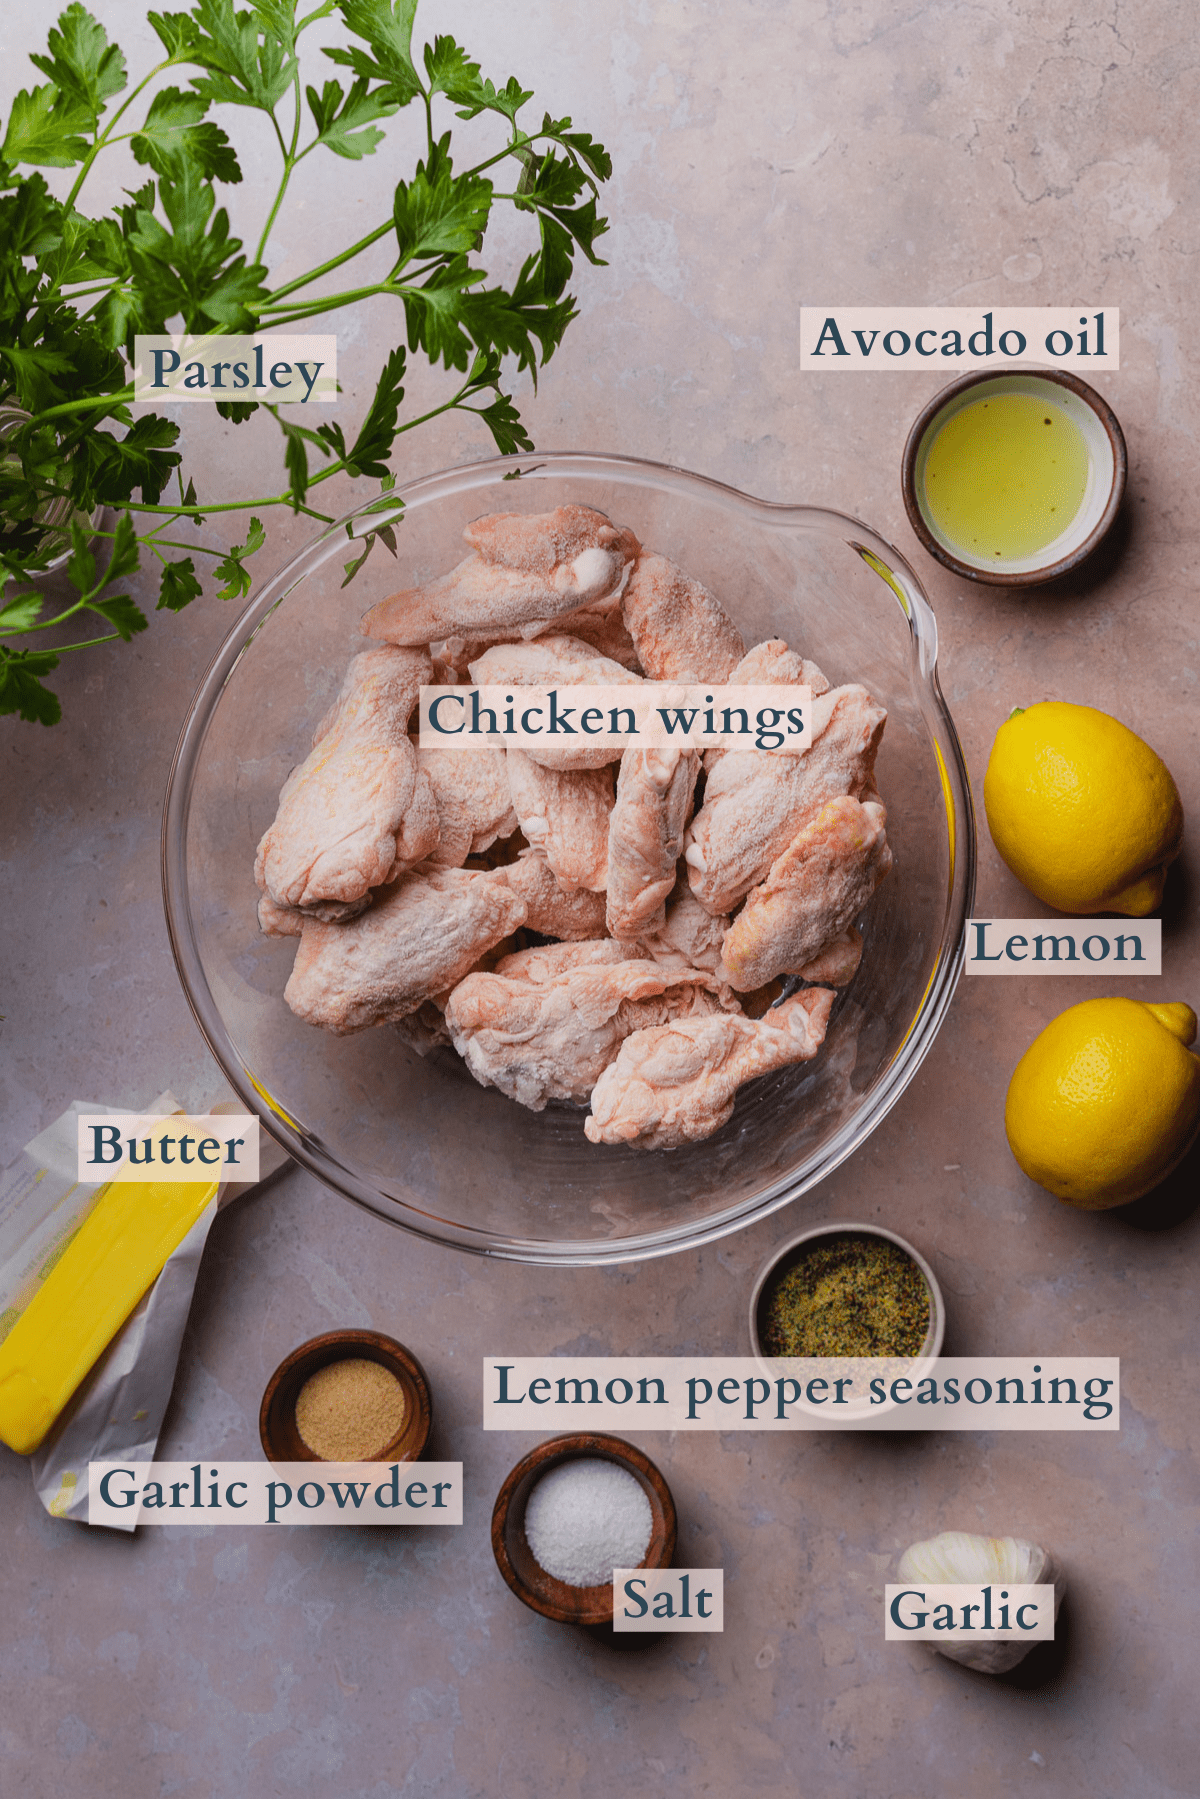 ingredients to make air fryer lemon pepper wings, with raw chicken wings, lemons, avocado oil, garlic, garlic powder, lemon pepper seasoning, salt, butter, and parsley.